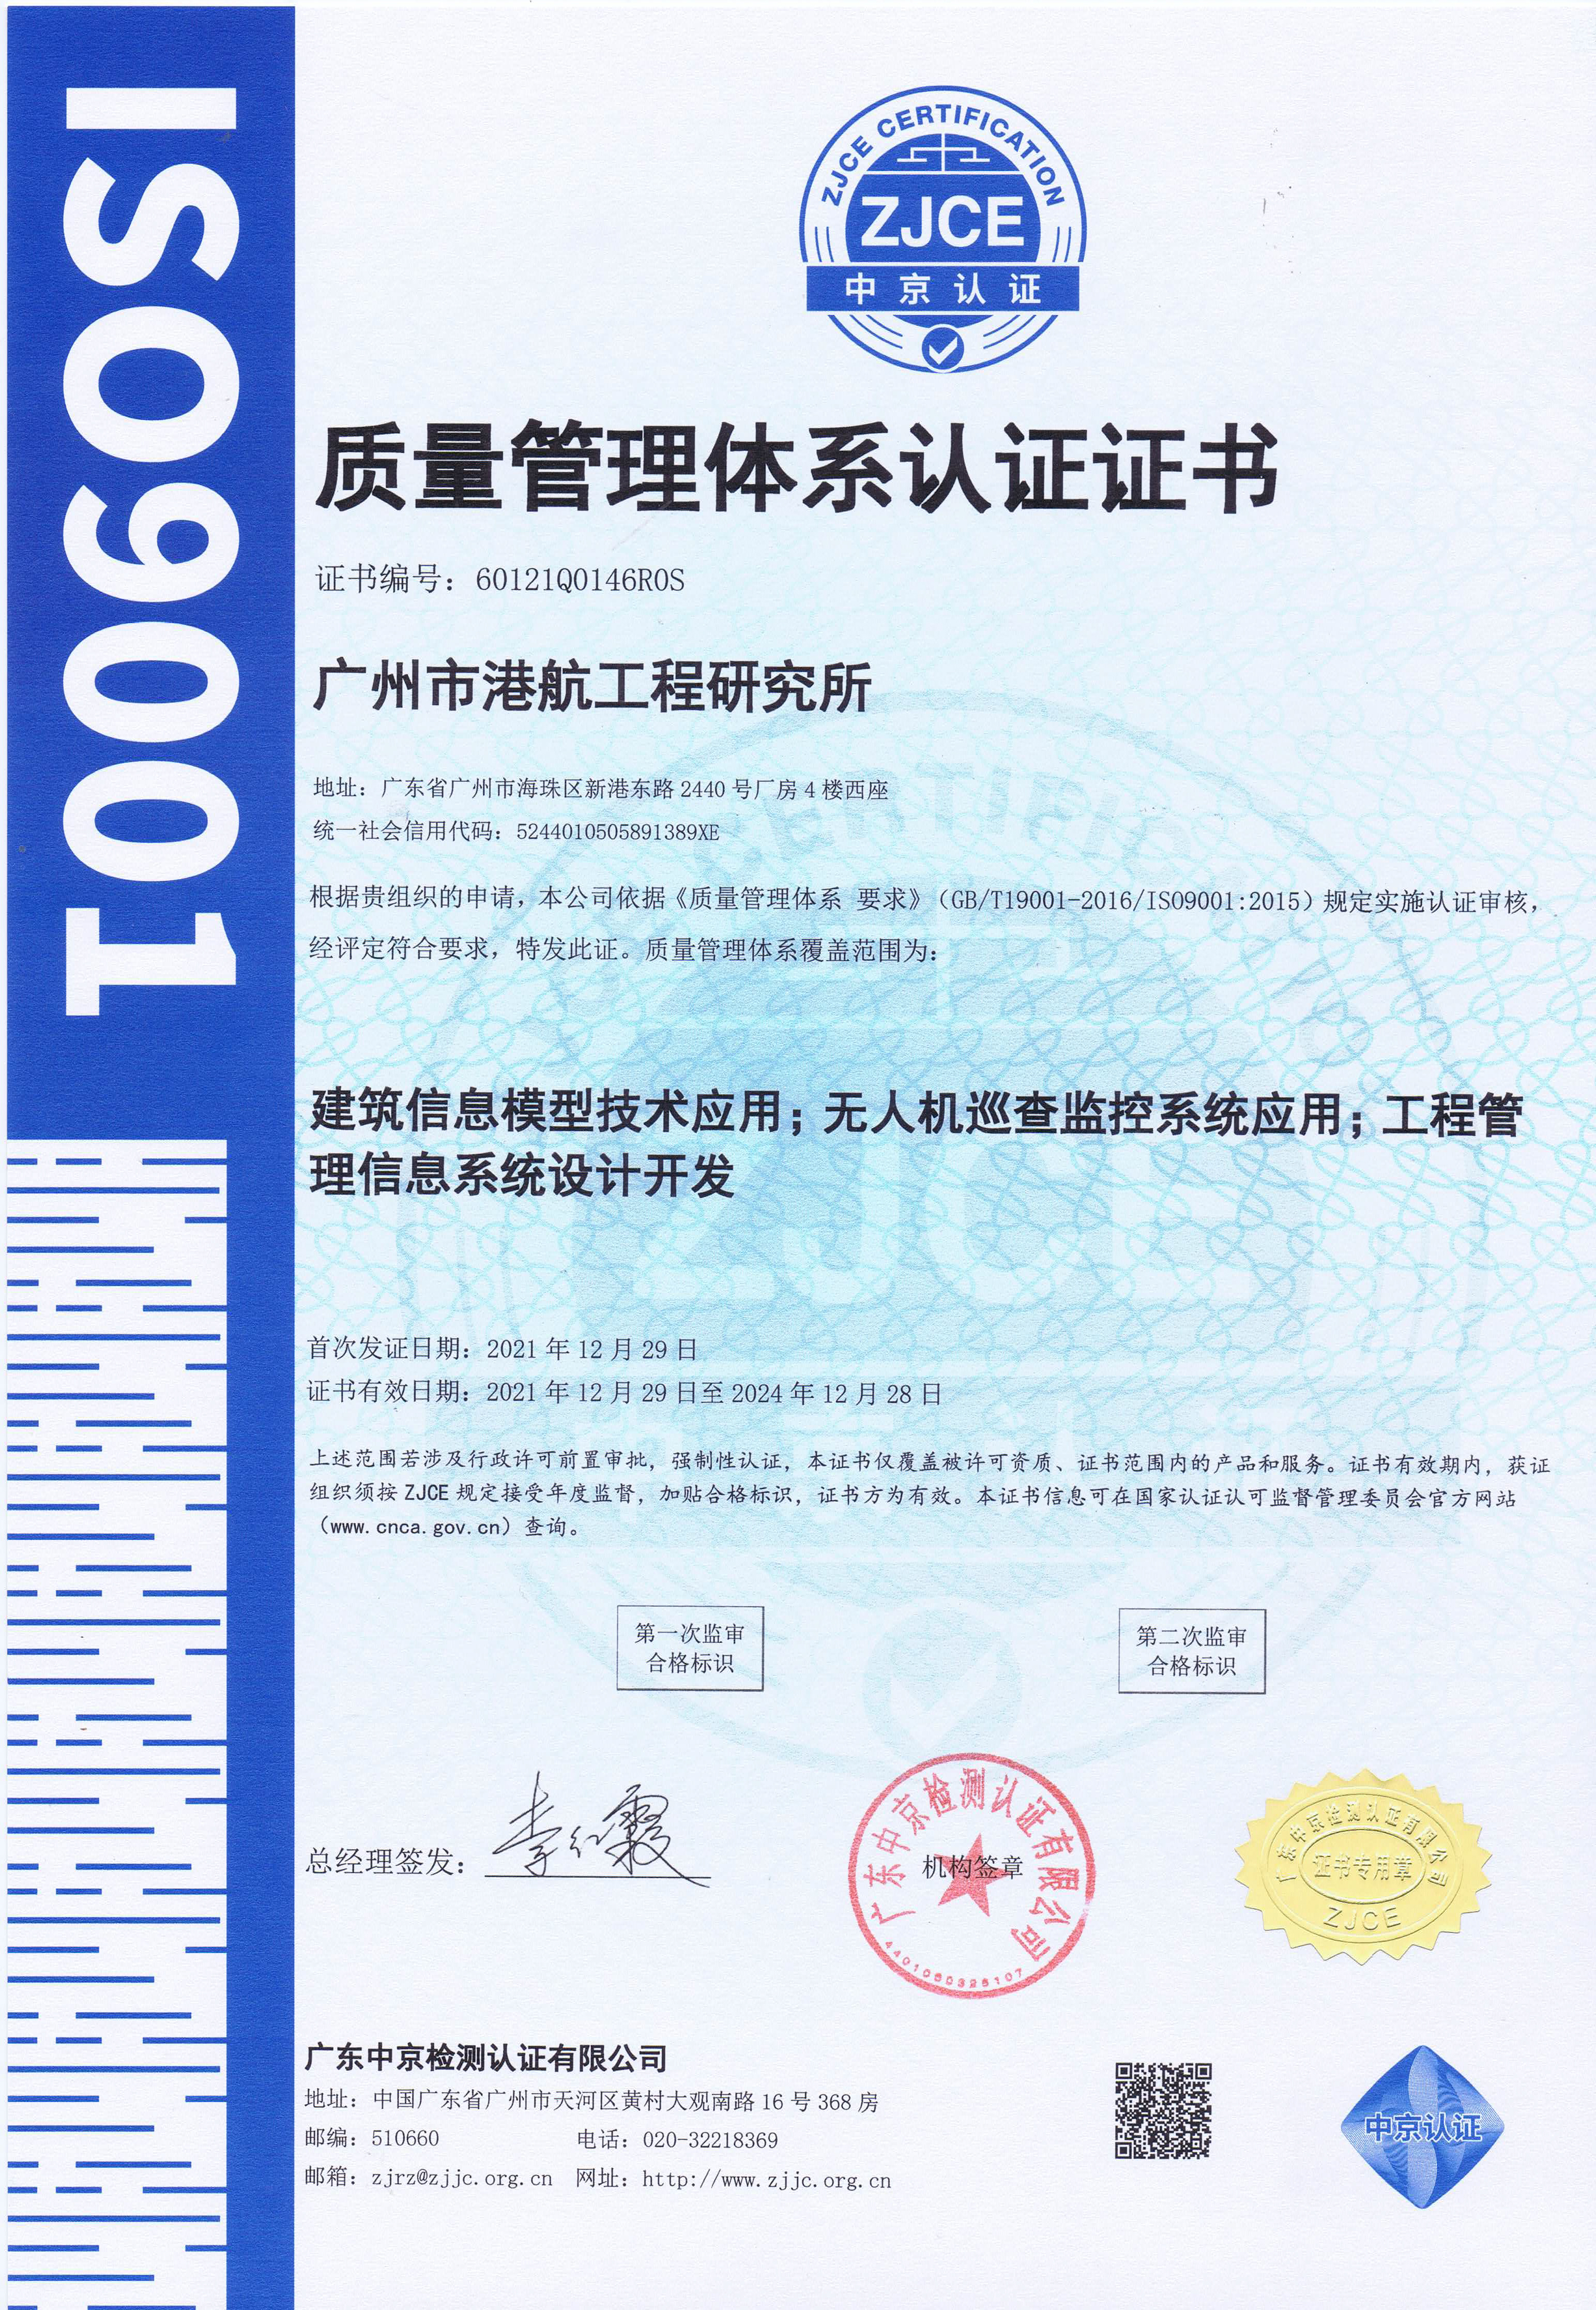 我單位部分產品通過ISO9001體系認證